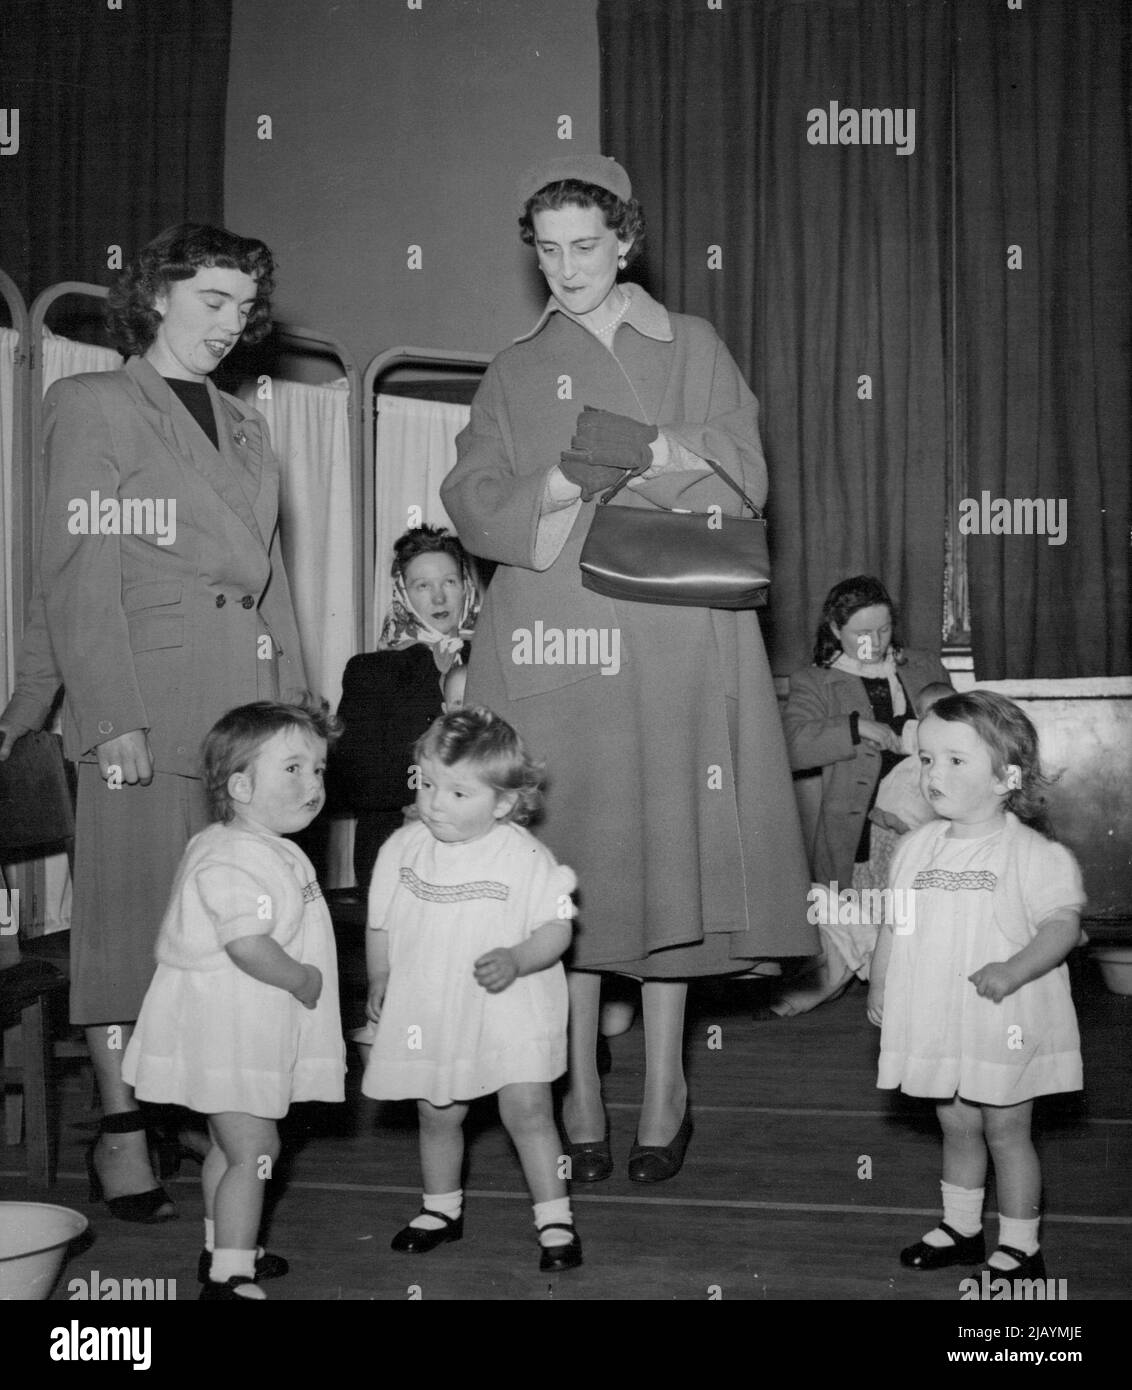 La duchessa del Kent incontra i tripli - la duchessa del Kent in una visita a Slough, Bucks., oggi (Lunedi) - incontra le triplette di Slough, Elizabeth, Keren e Susan Stuart. La duchessa indossa un berretto simile a un piattino e un cappotto morbido e avvolgente con maniche di puff. Durante la sua visita di oggi, ha visto il Centro della Comunità di Slough, l'unità di radiografia di massa (X-Ray) e l'infermiera dei bambini in Farnham Road. Febbraio 26, 1951. (Foto di Reuterphoto). Foto Stock